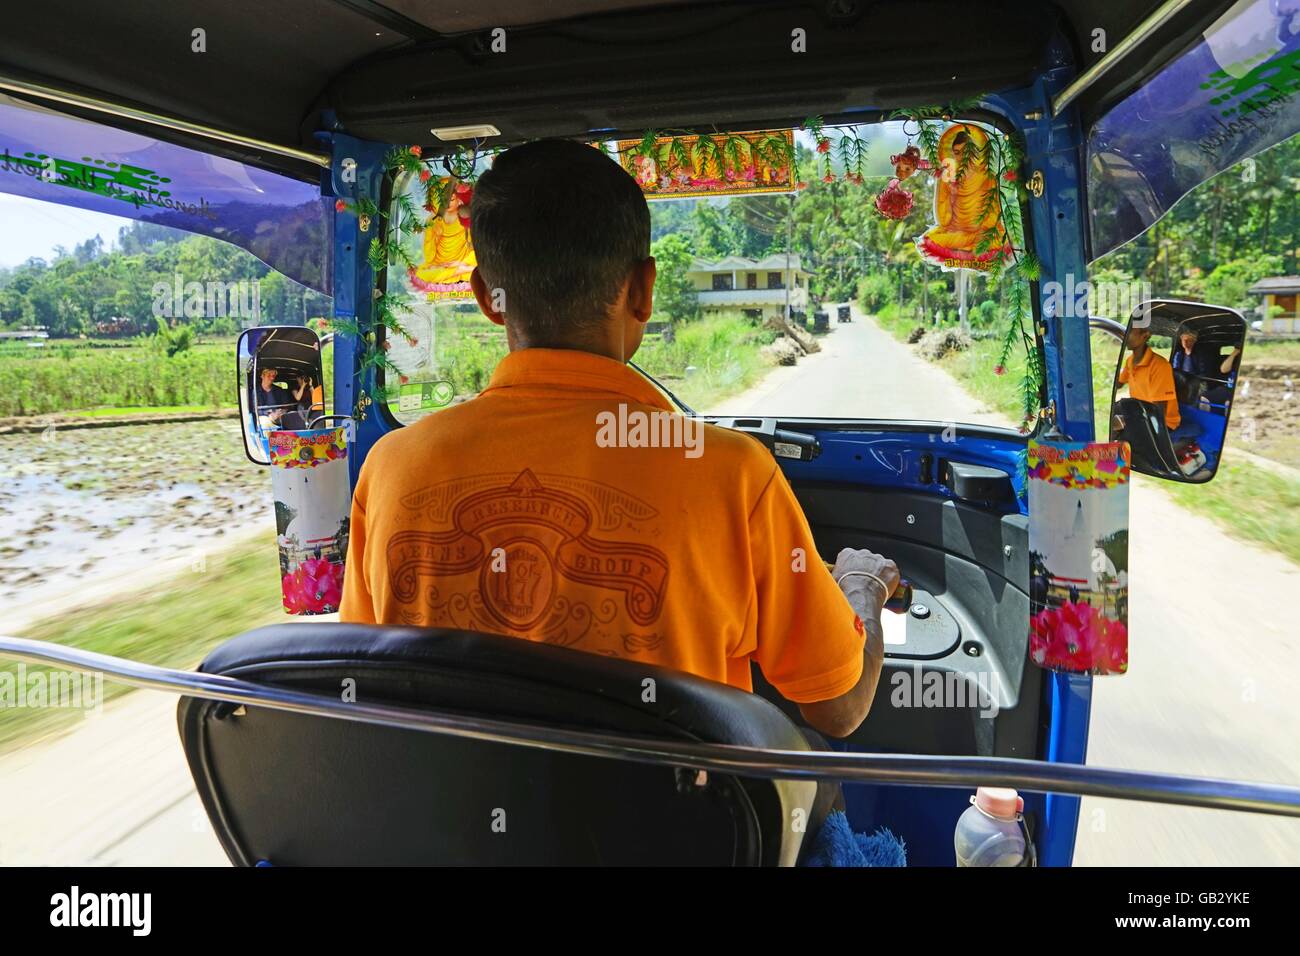 Stock Photo Tuk tuk driver Sri Lanka Asia transport and roads Stock Photo